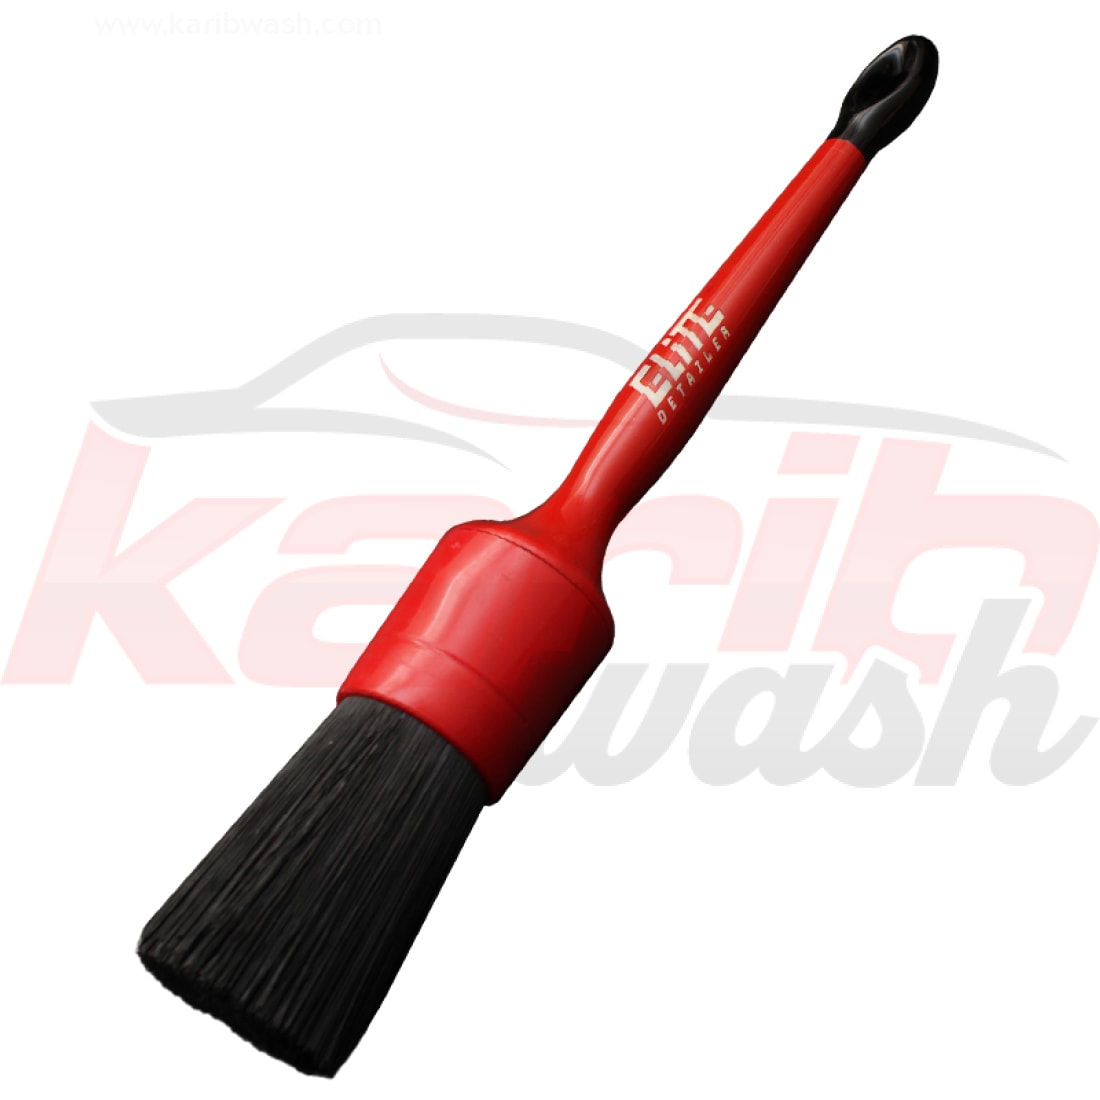 Hard Detailing Brush 18 - 40 mm - ELITE DETAILER - KARIBWASH